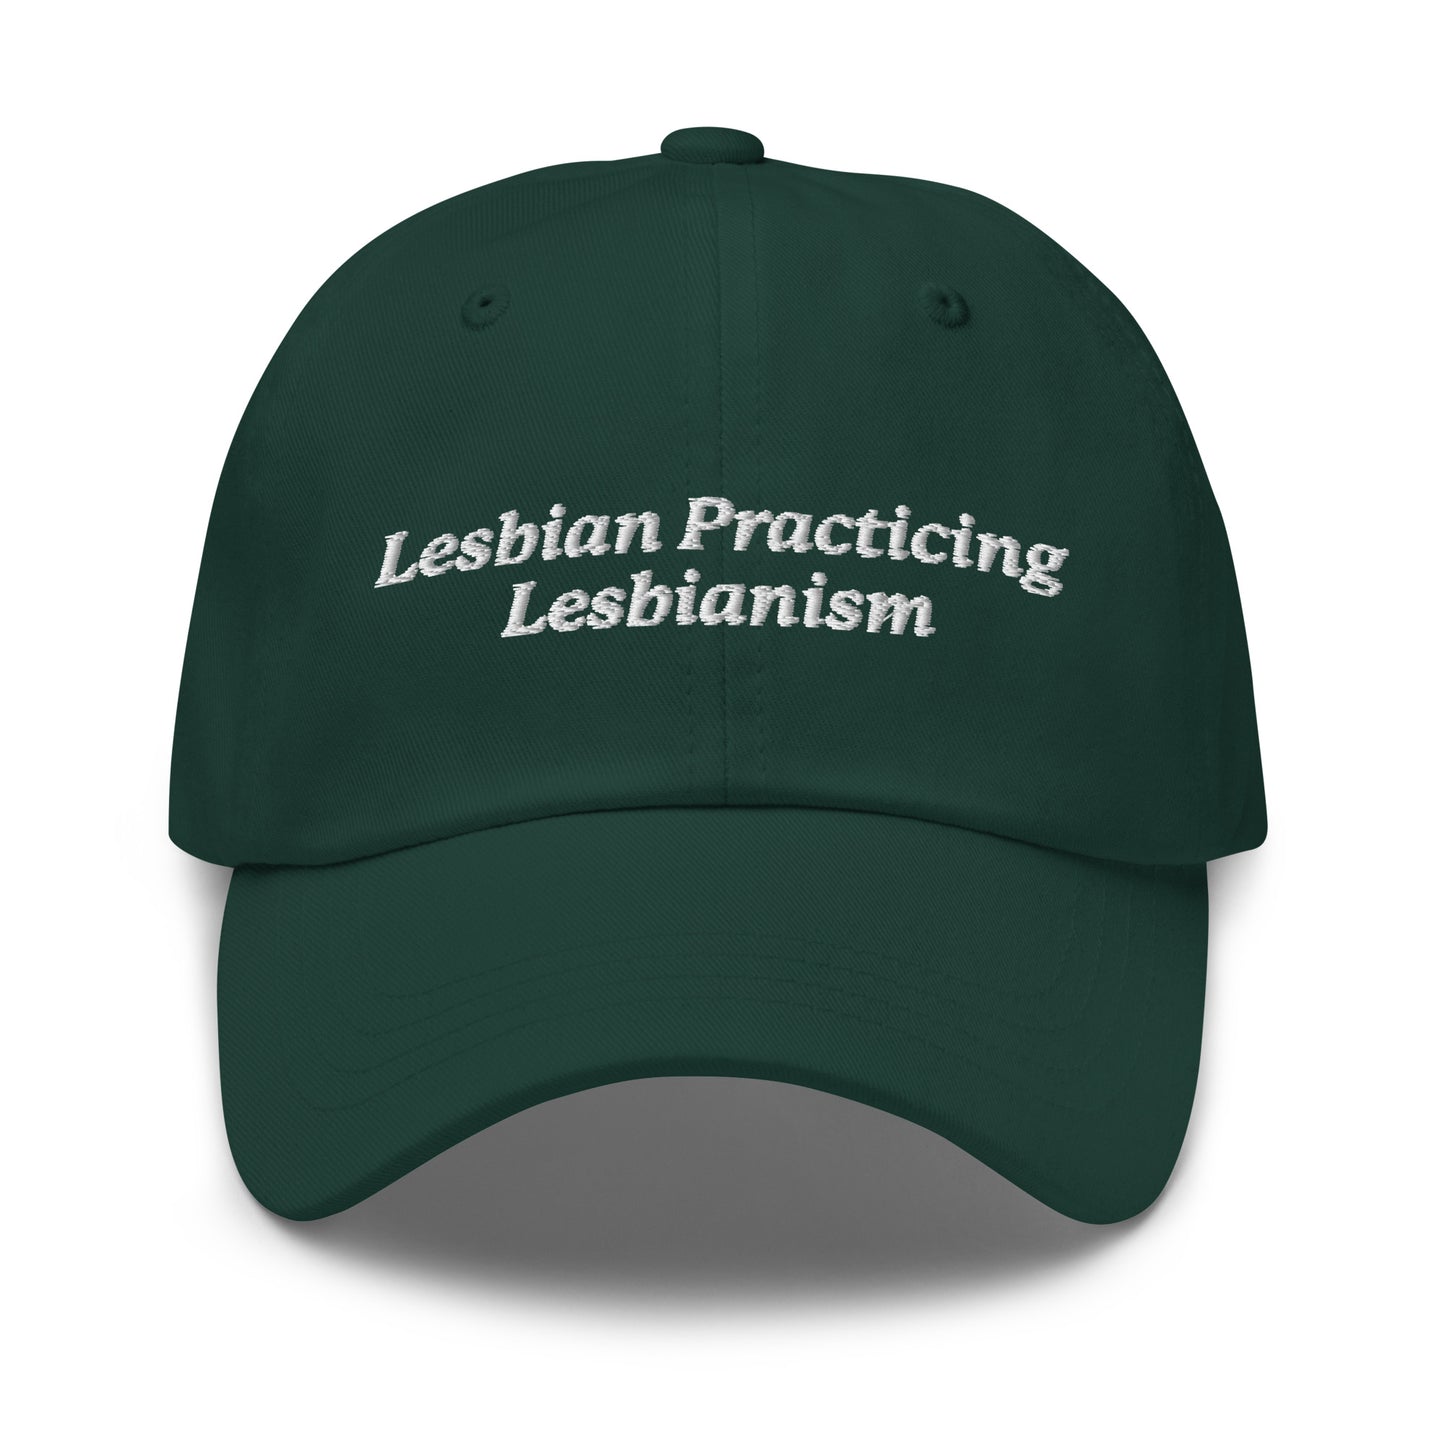 Lesbian Practicing Lesbianism hat